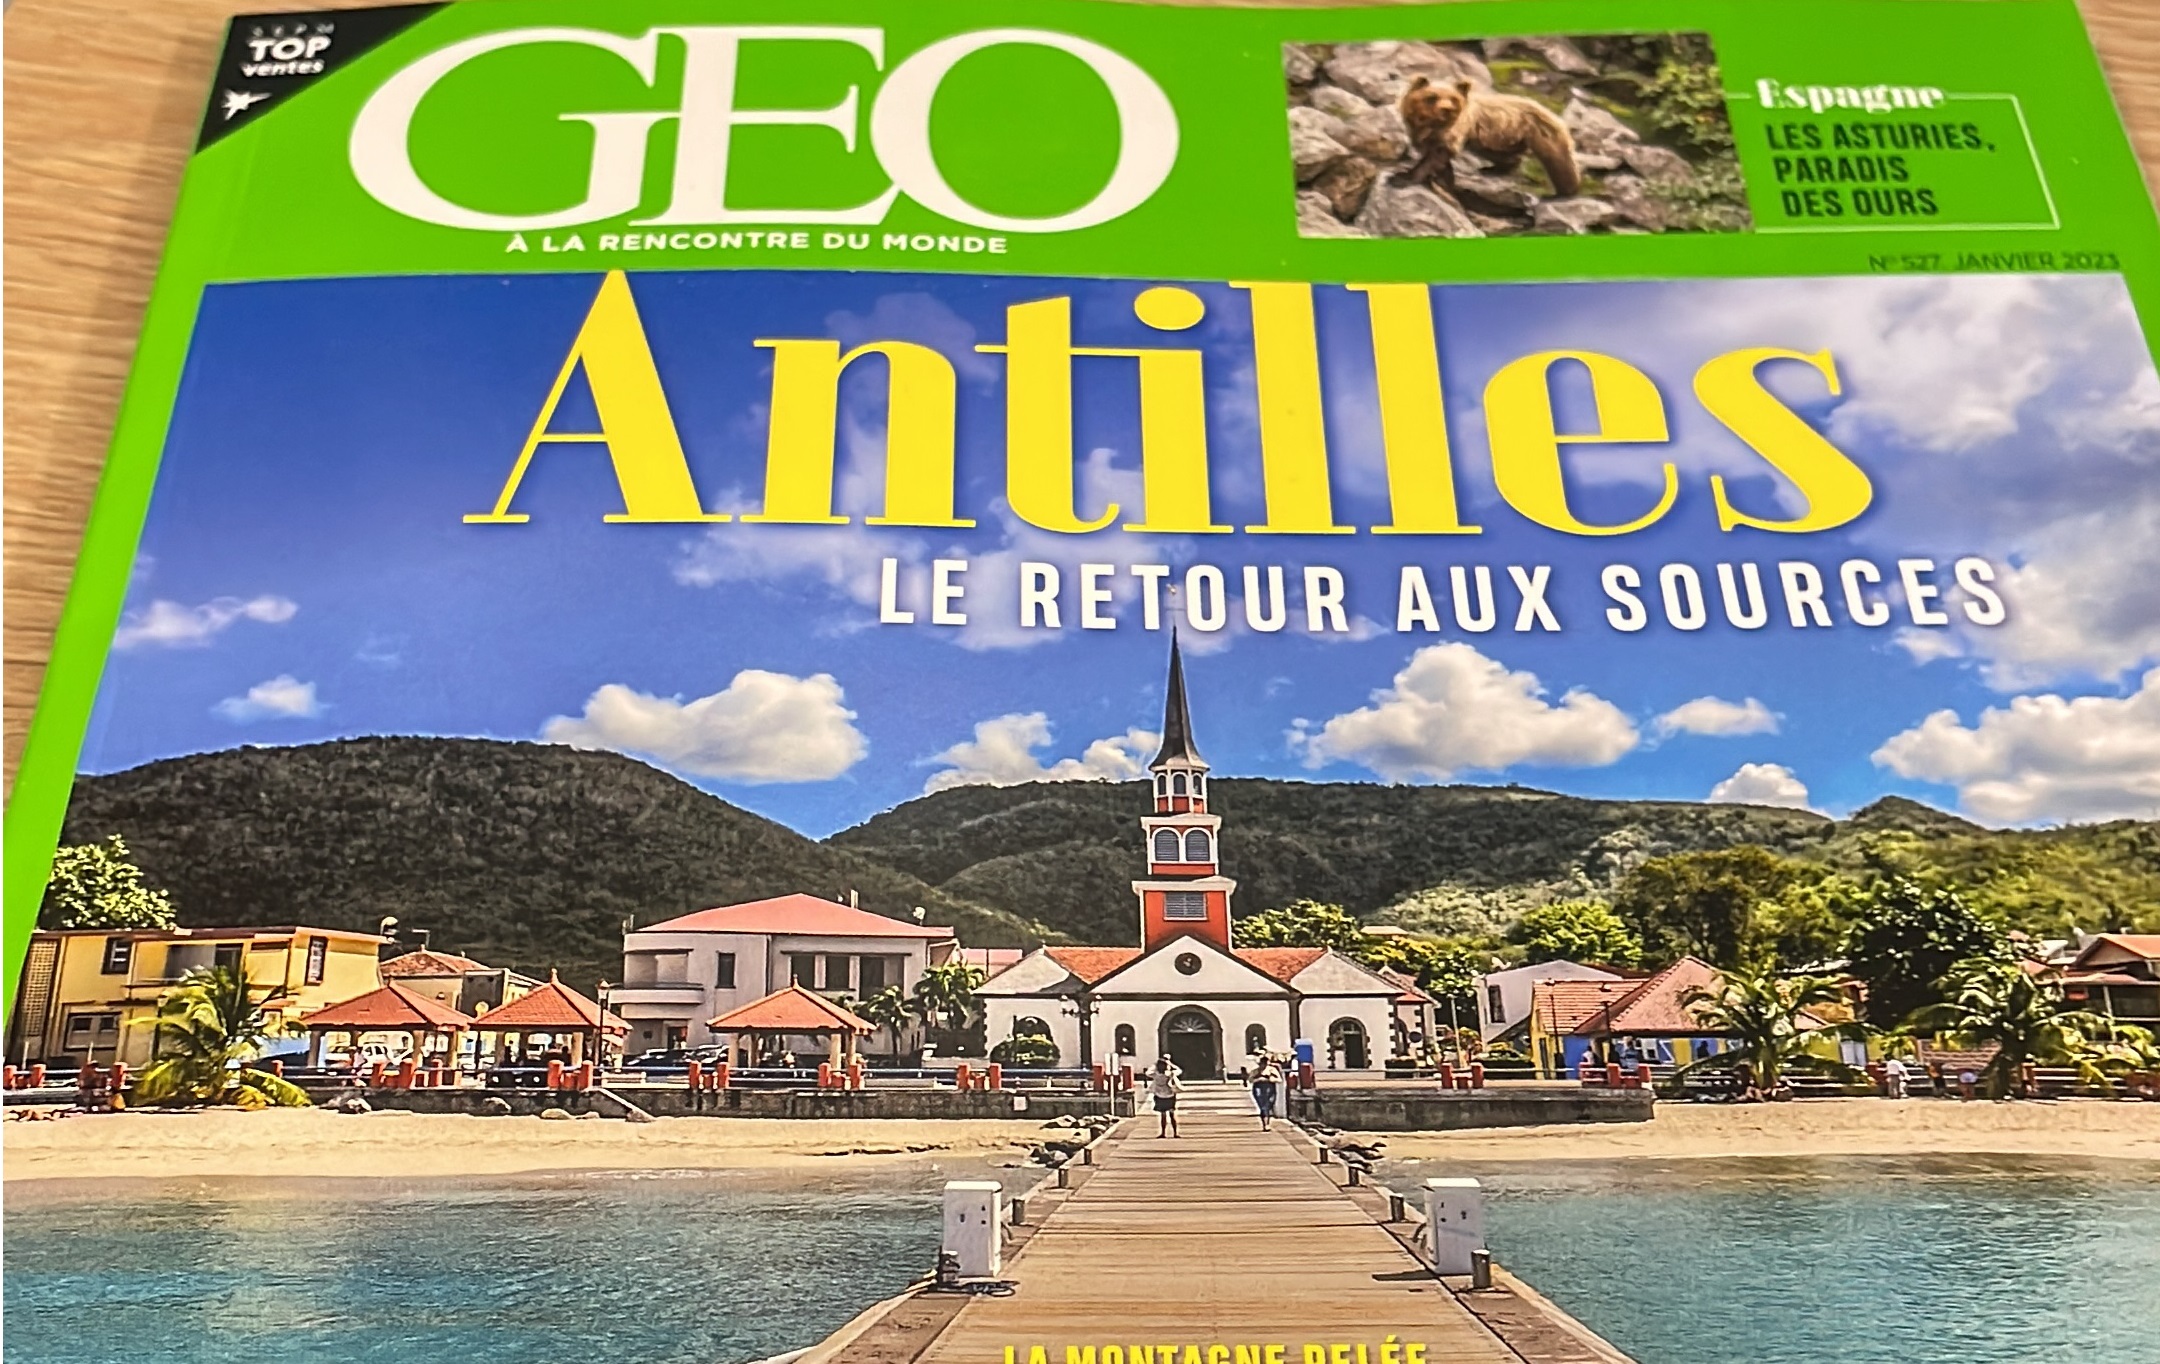     Le magazine du voyage Geo fait sa "Une" sur les Antilles en janvier

